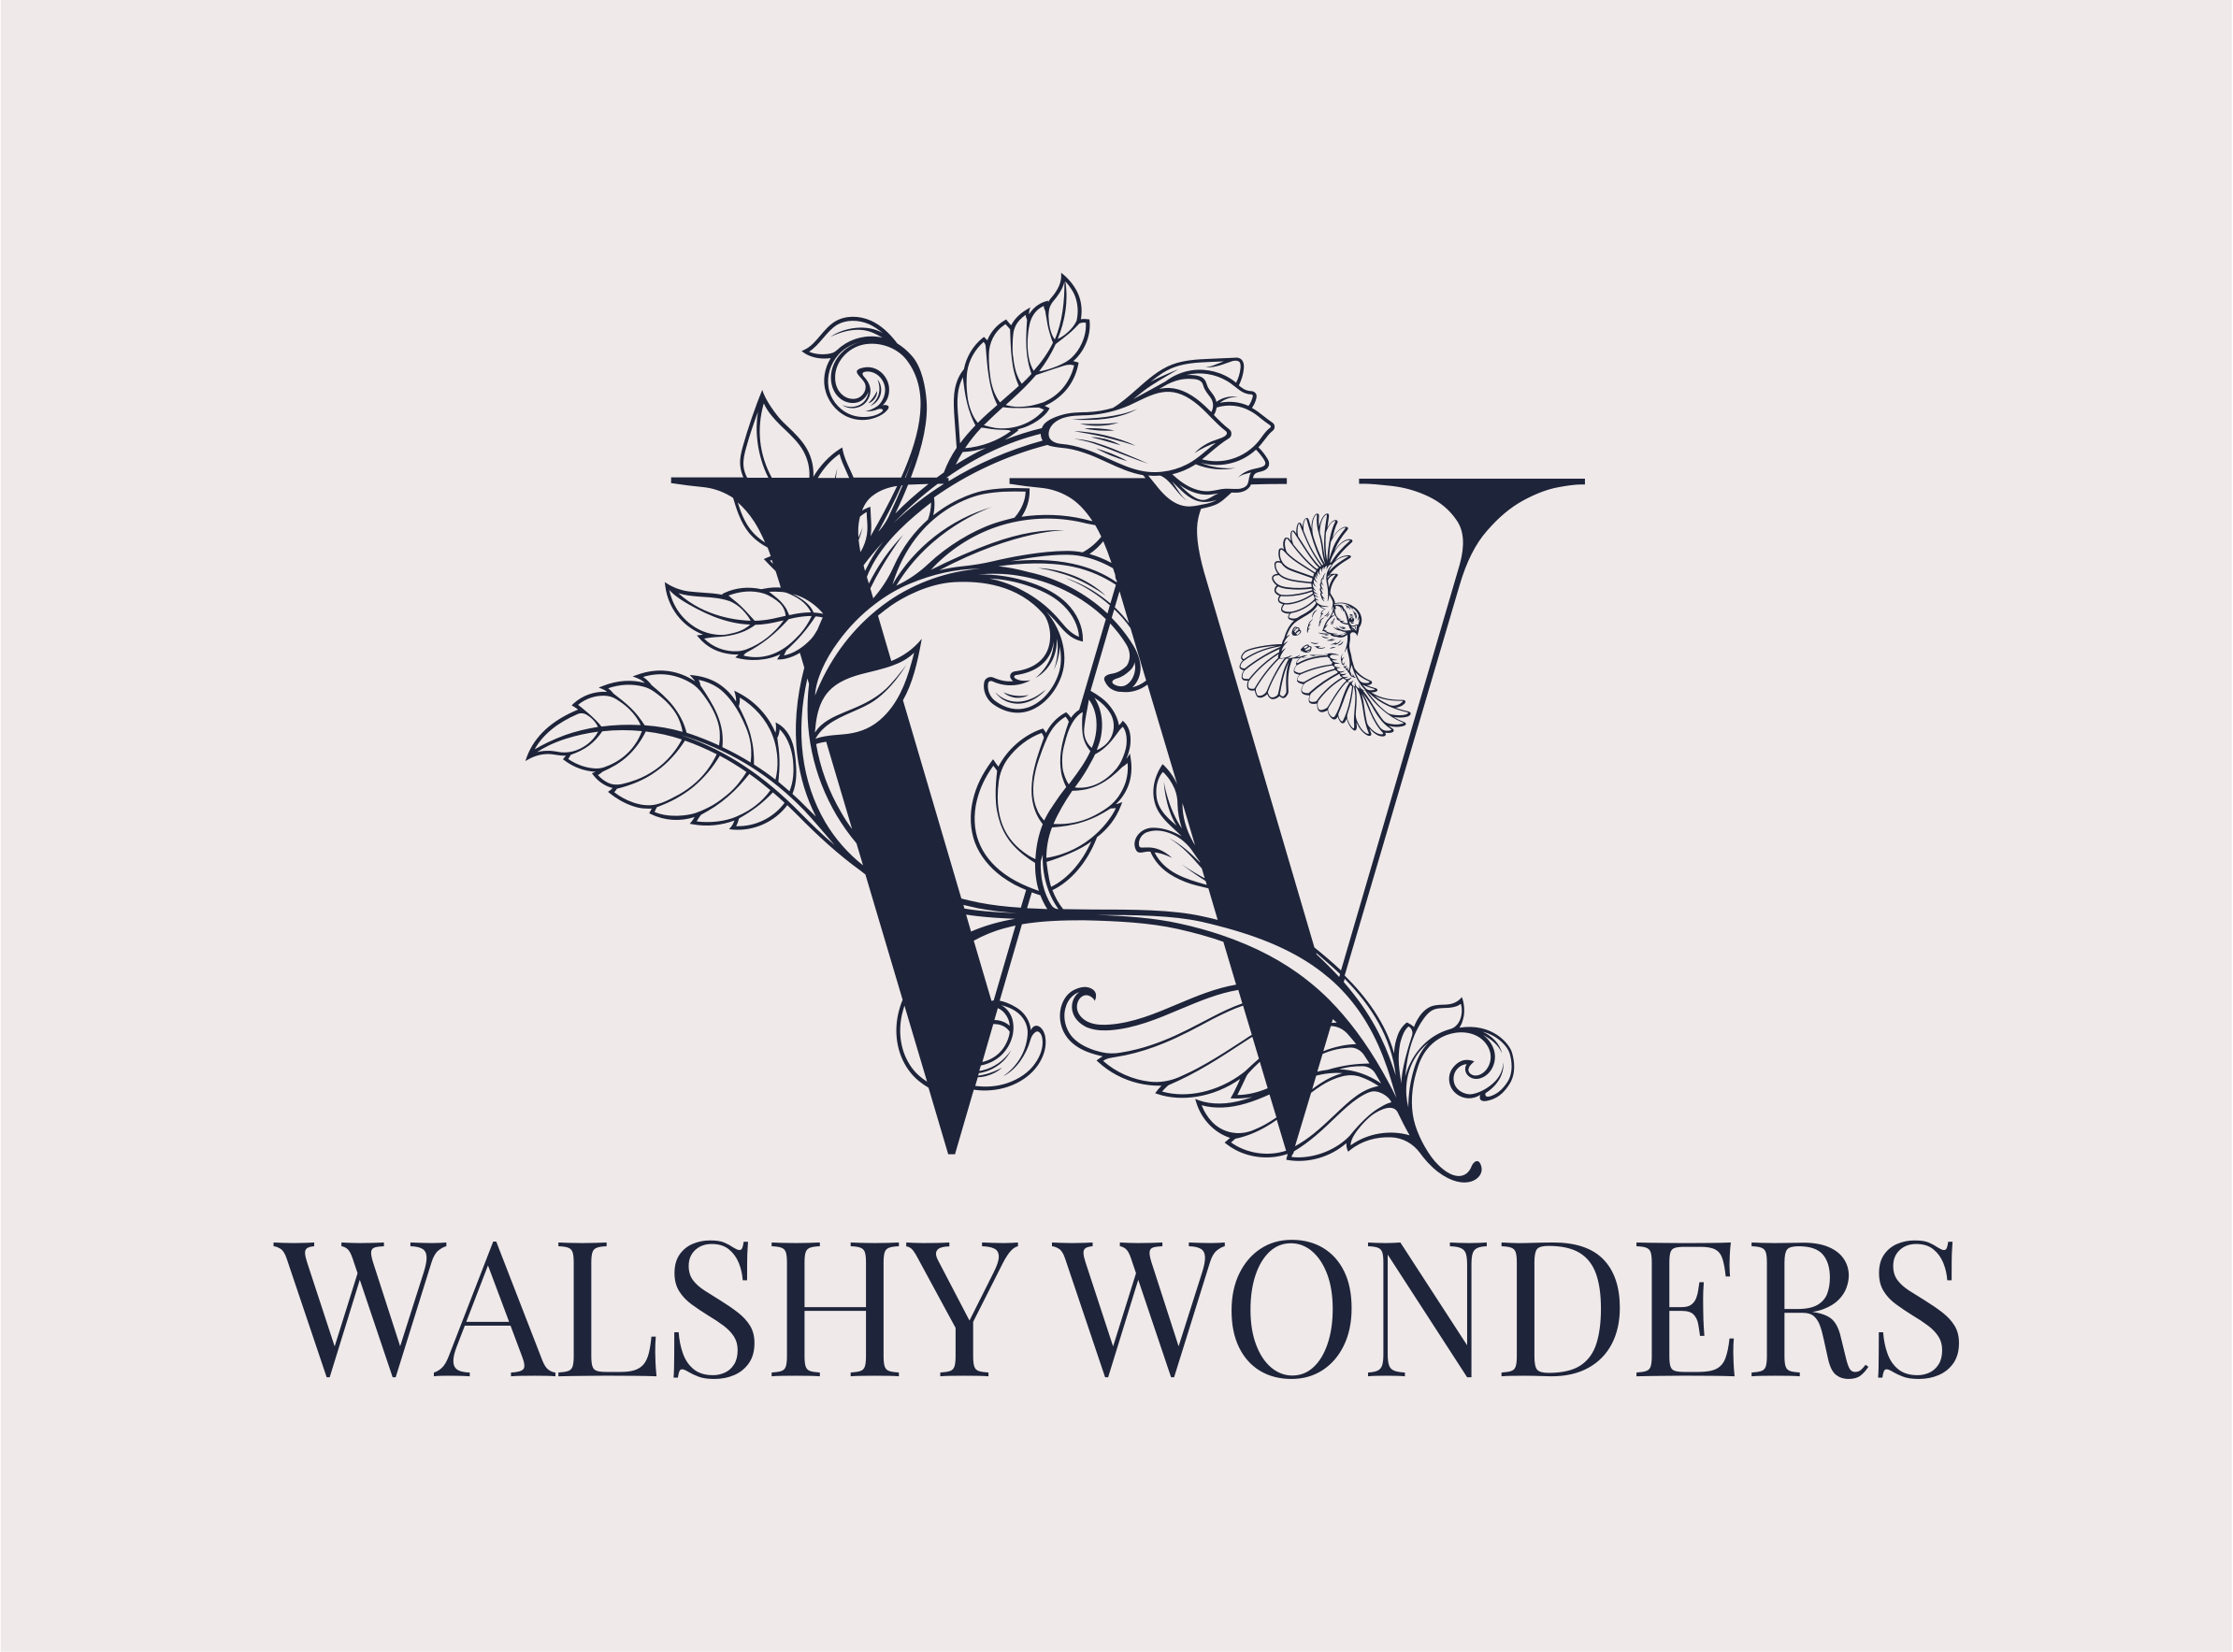 WalshyWonders